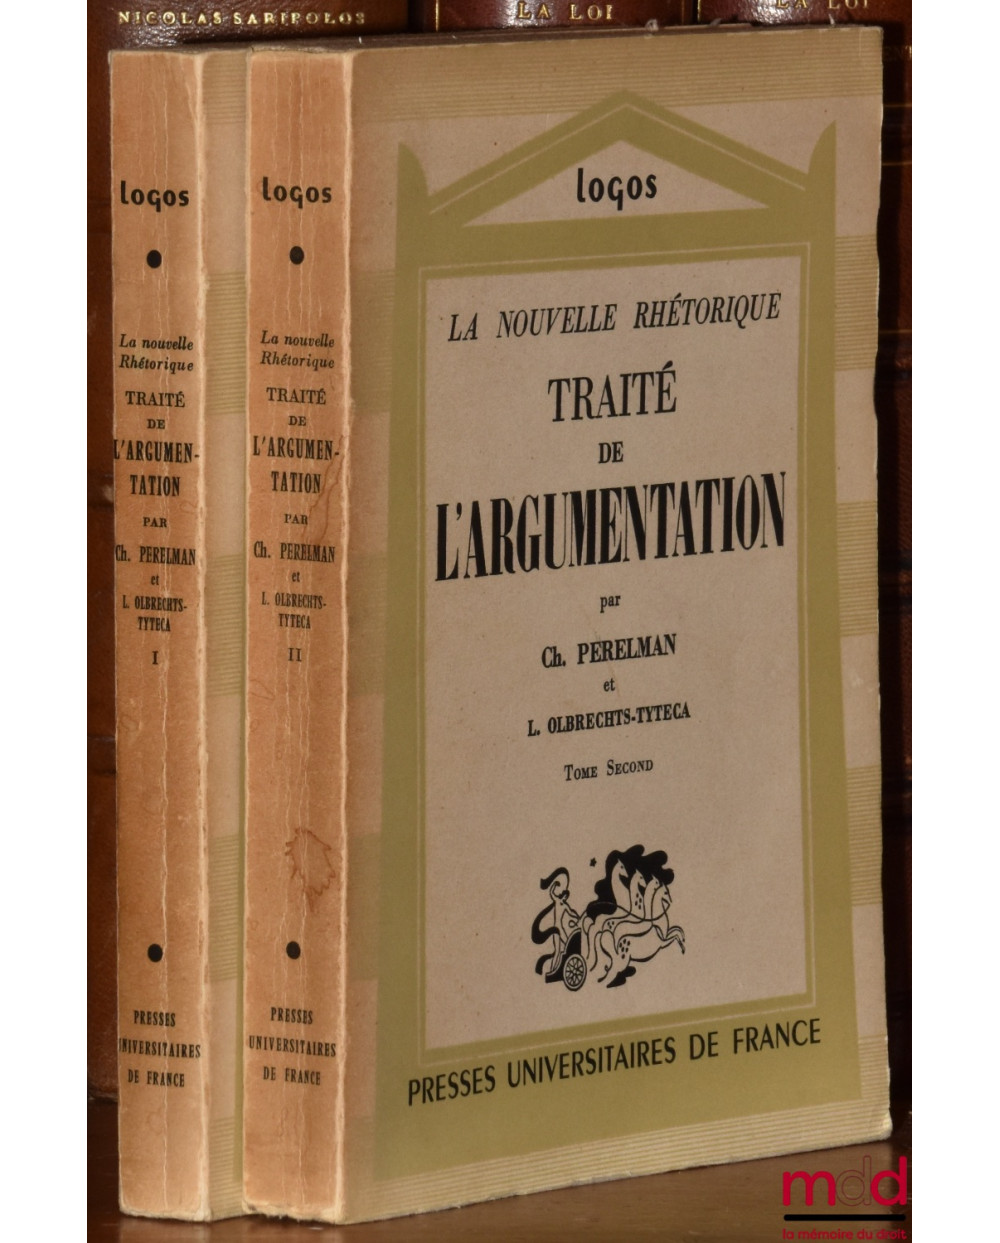 TRAITÉ DE L’ARGUMENTATION, La Nouvelle Rhétorique, coll. Logos Introduction aux études philosophiques